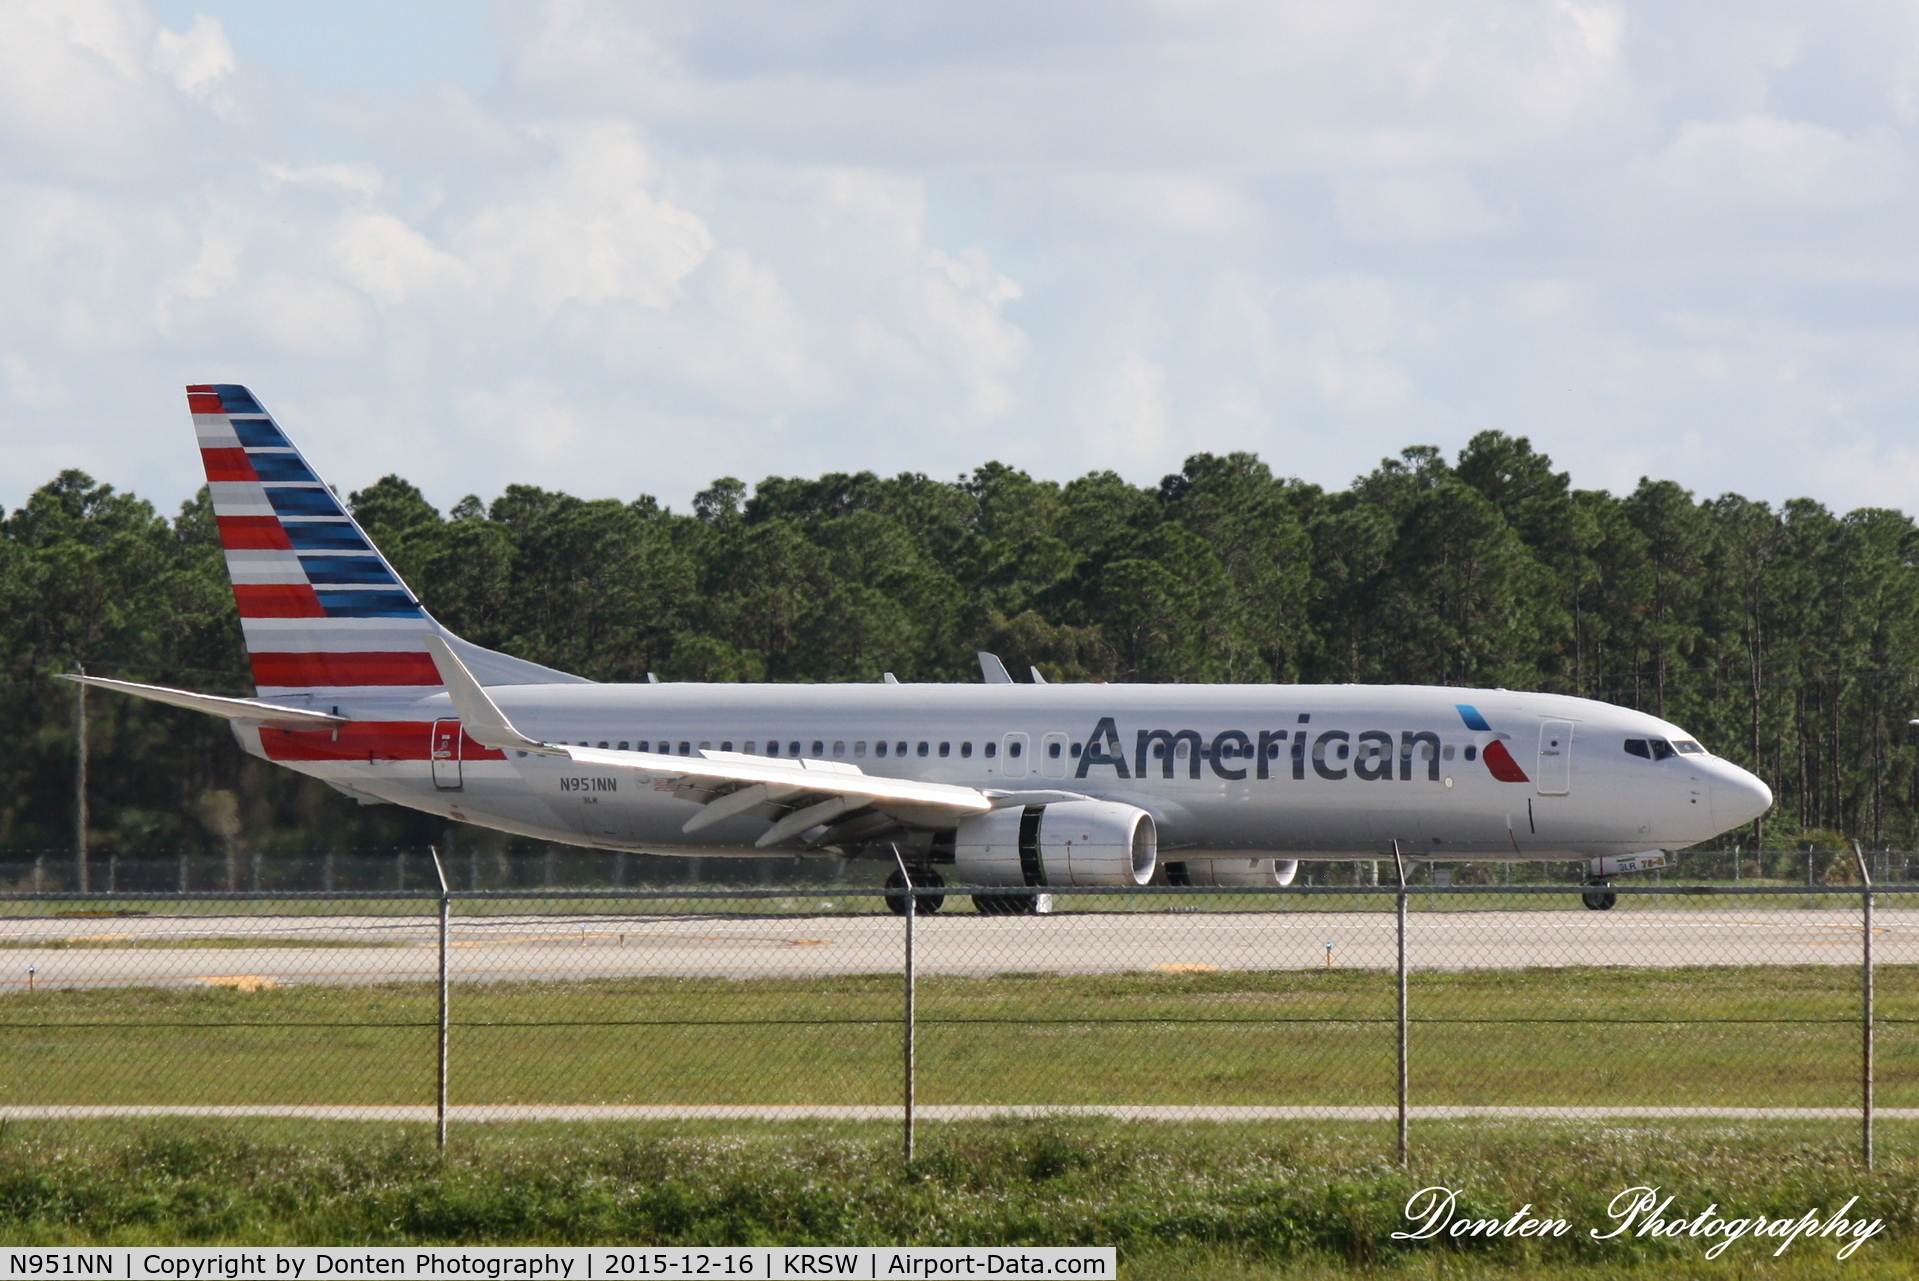 N951NN, 2014 Boeing 737-823 C/N 33327, American Flight 1477 (N951NN) arrives at Southwest Florida International Airport following flight from Chicago-O'Hare International Airport